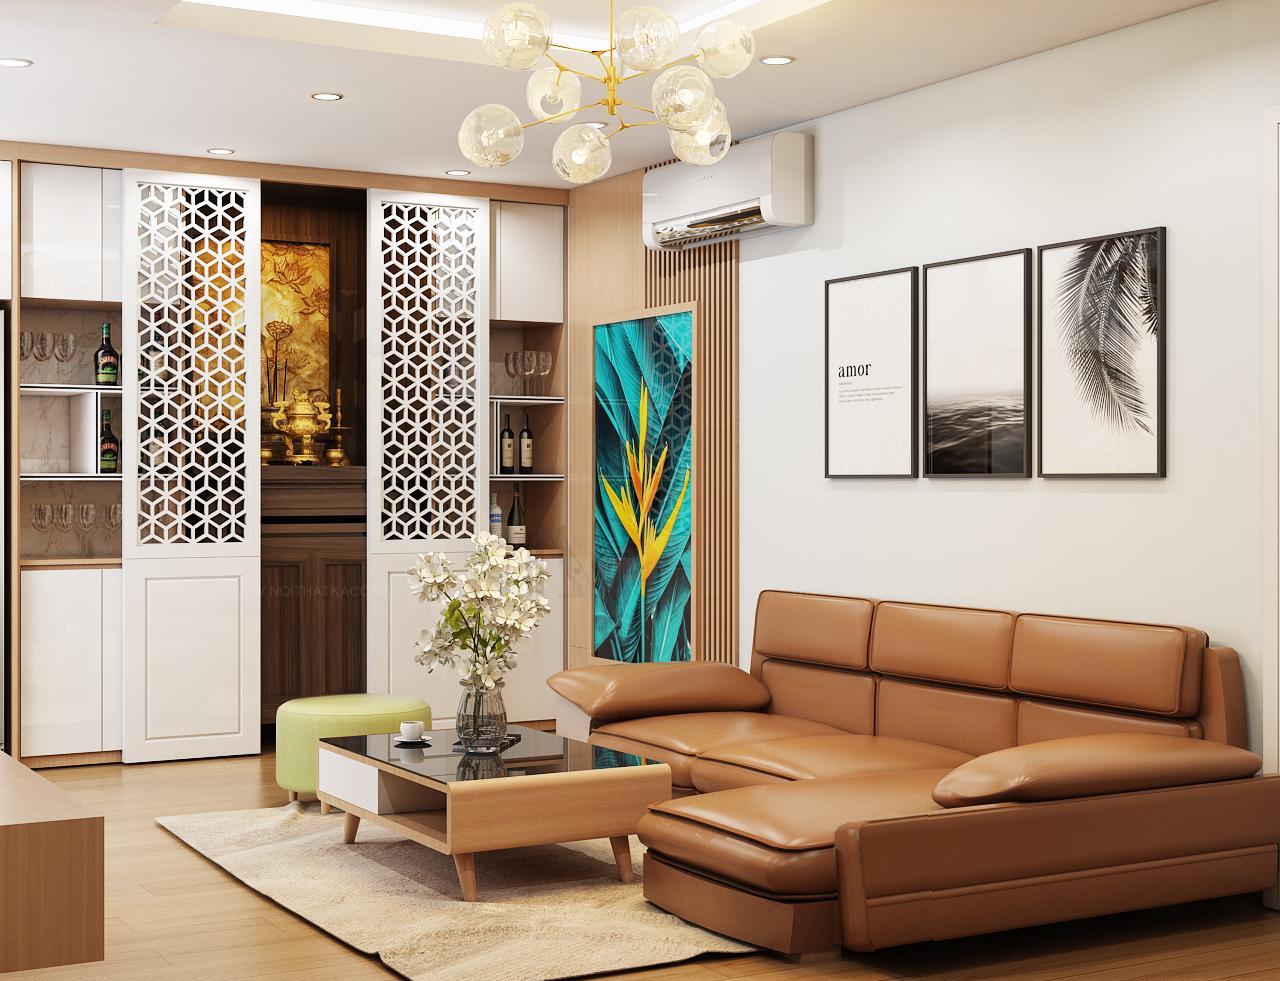 Tham khảo các mẫu thiết kế nội thất chung cư tại Triệu Gia để có thêm ý tưởng cho căn hộ của mình